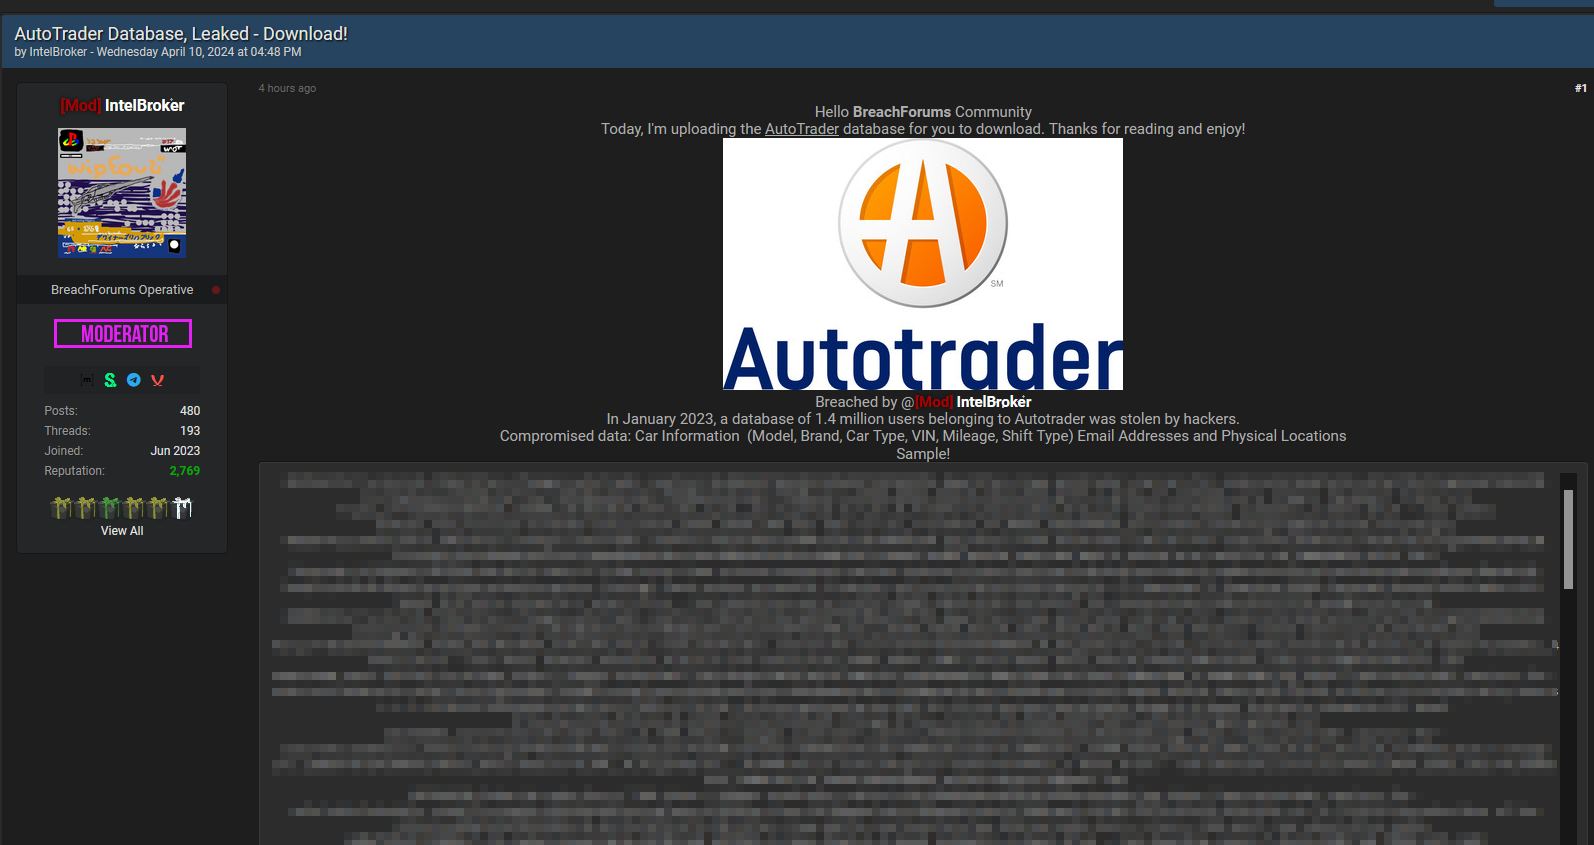 [repost] AutoTrader DB Leaked - IntelBroker